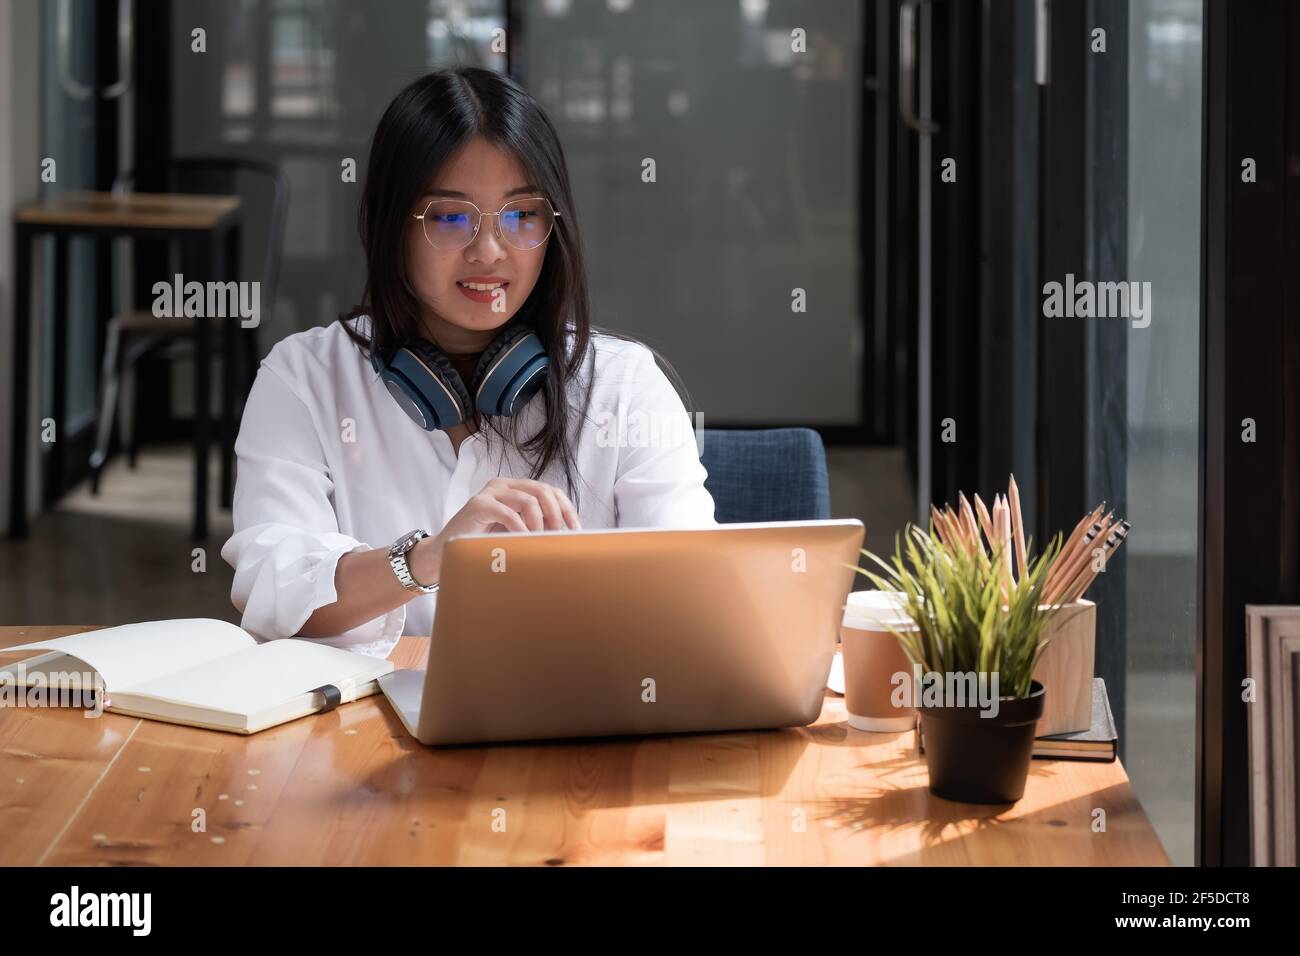 Fille asiatique avec des lunettes regarder l'ordinateur portable tout en faisant des devoirs faire des appels vidéo à l'étranger en utilisant la connexion d'amis d'Internet, formation en ligne Banque D'Images